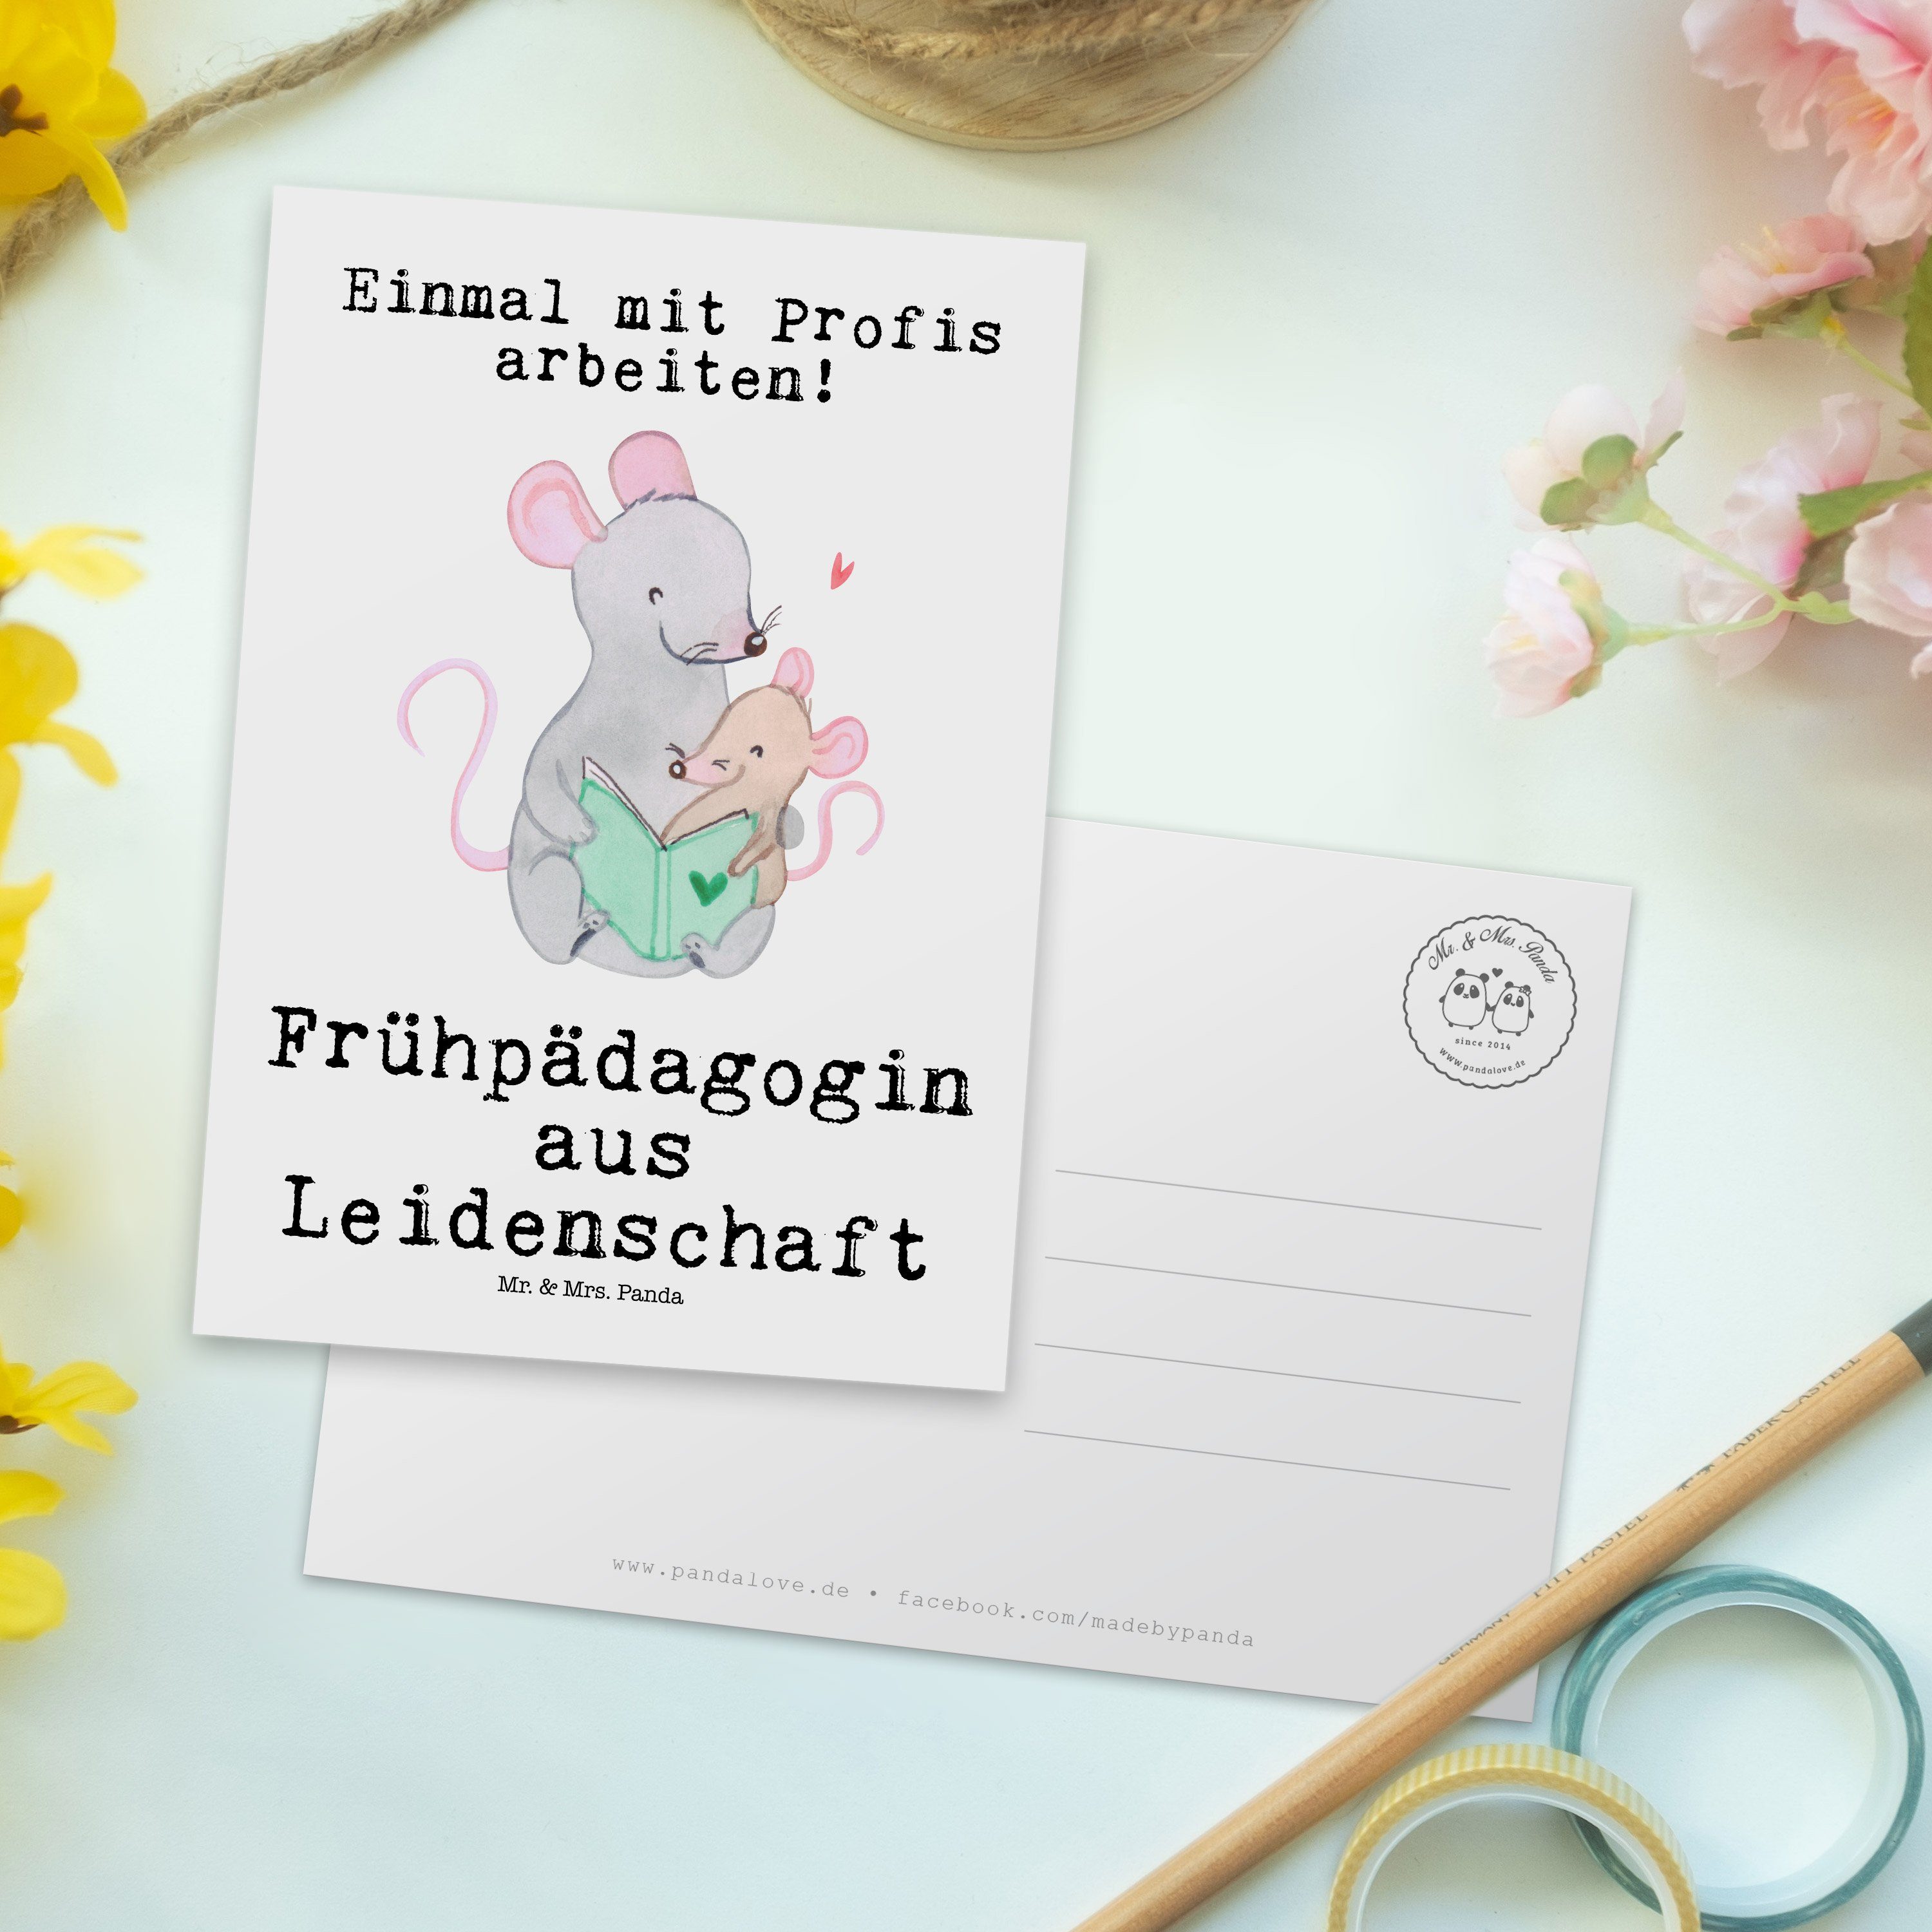 & Leidenschaft - Mrs. Frühpädagogin aus Studium, - Panda Postkarte Mr. Geschenk, Weiß Einladungs